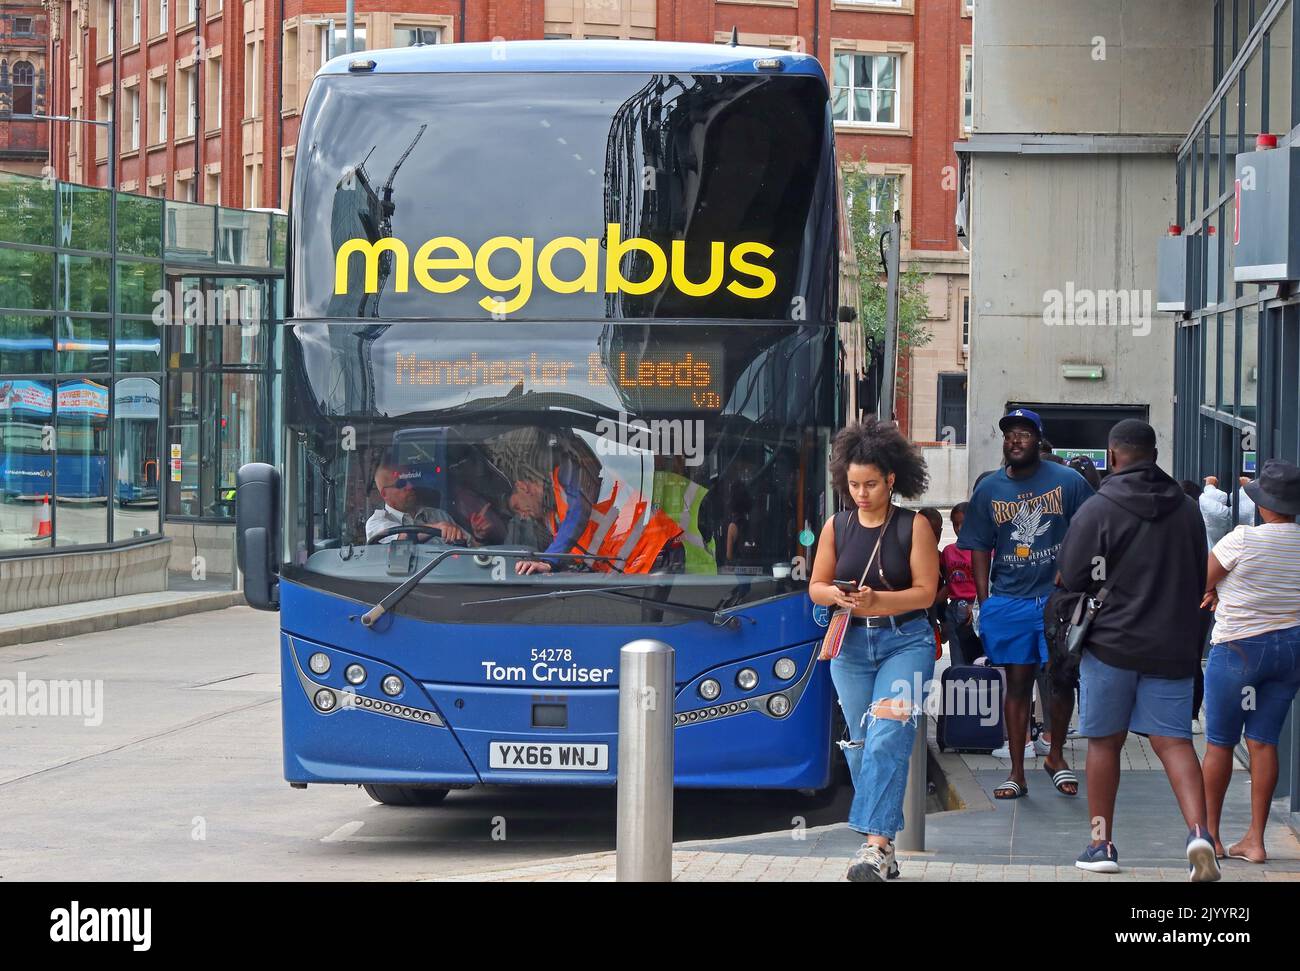 Da Megabus a Leeds , nella stazione degli autobus e interscambio di Shudehill, Manchester, Inghilterra, UK, M4 2AF, Tom Cruiser , YX66 WNJ Foto Stock